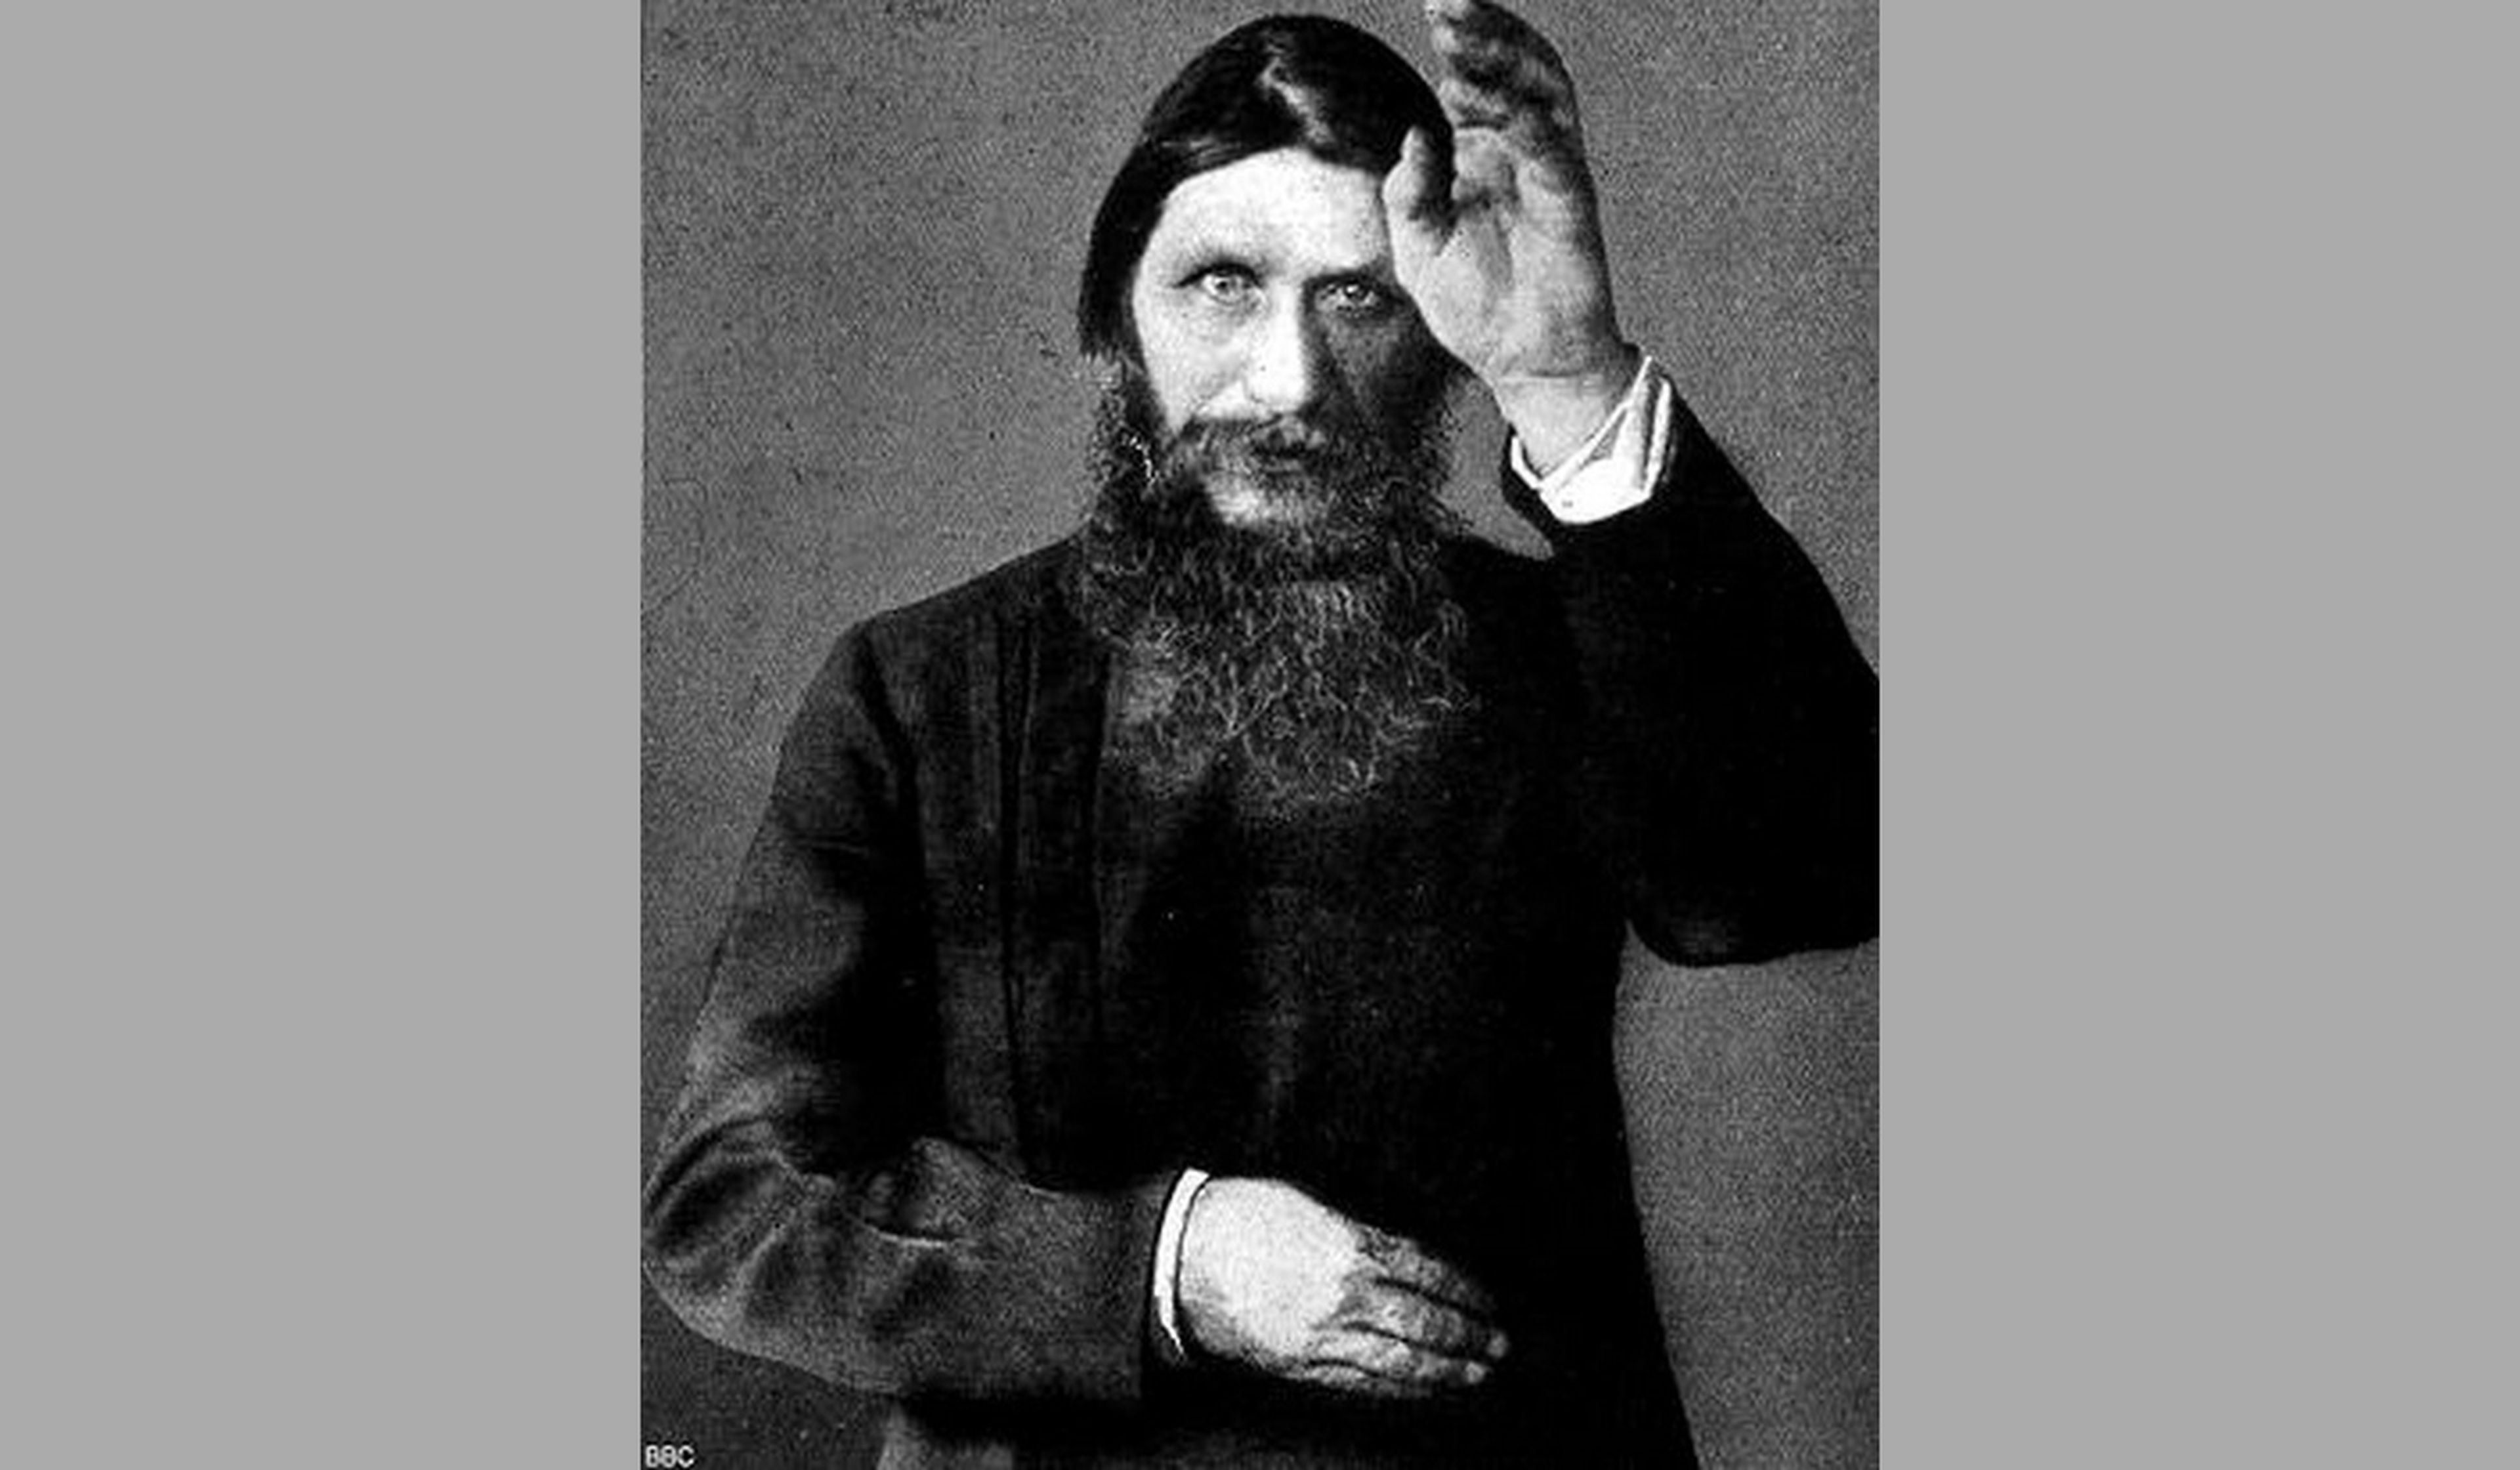 ¿Quién fue Rasputín? Curiosidades y sus profecías más inquietantes